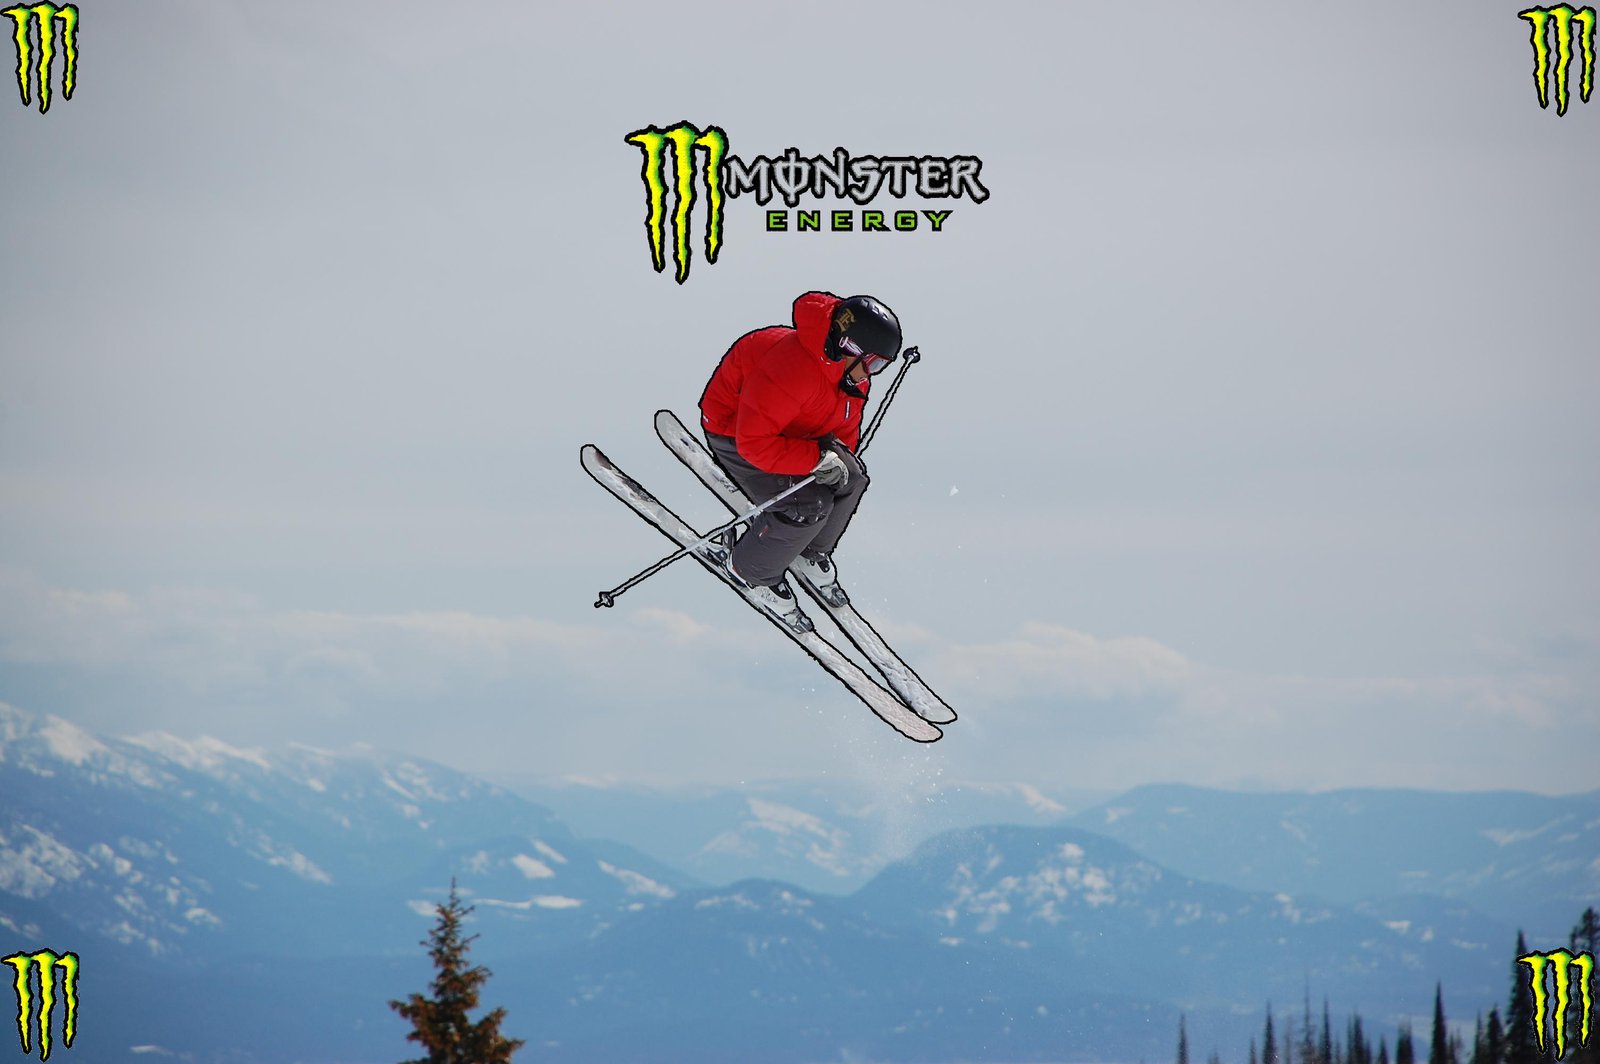 Monster Skier